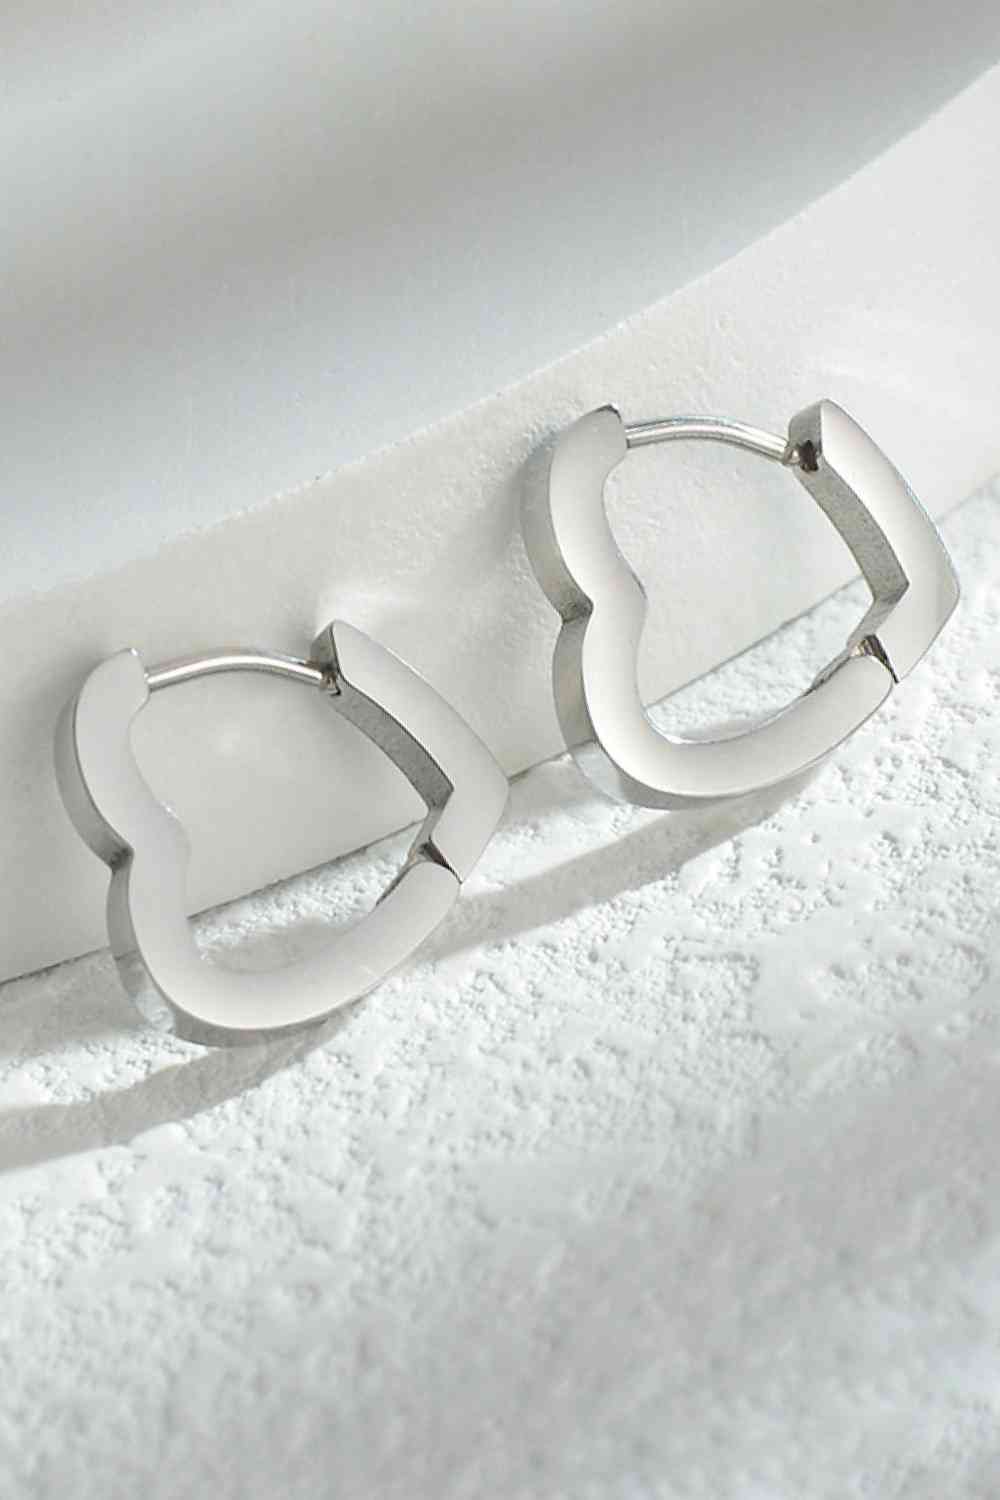 Heart shape huggies earrings in Silver. Stainless steel 